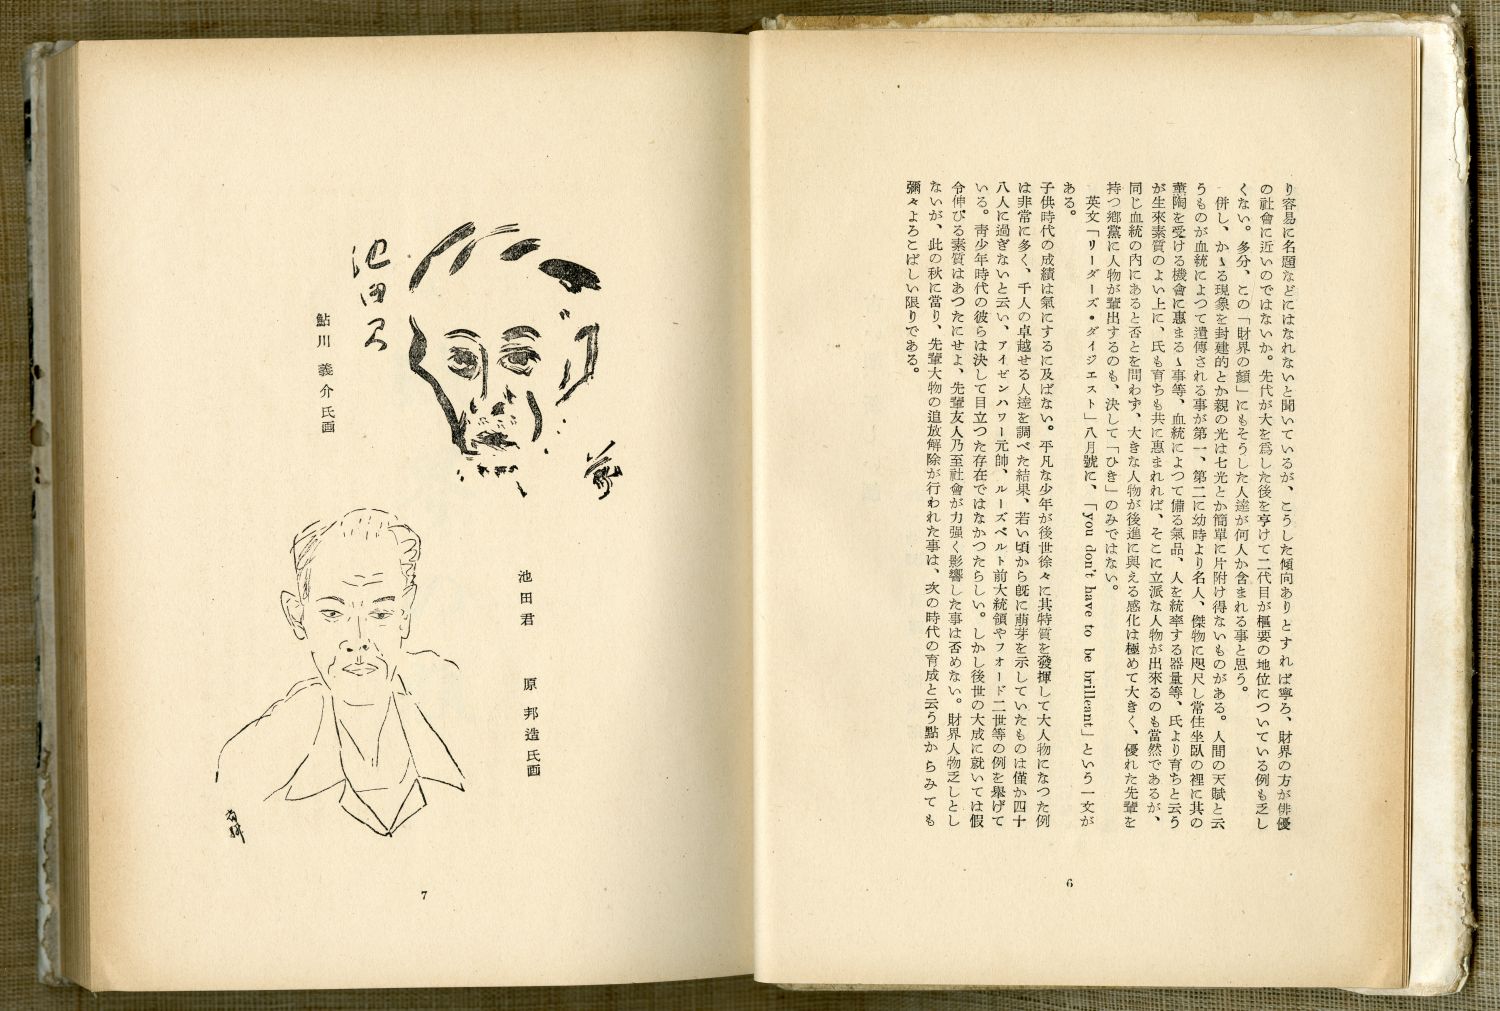 池田さぶろ『財界の顔』（1952年9月15日発行、講談社） のまえがきから